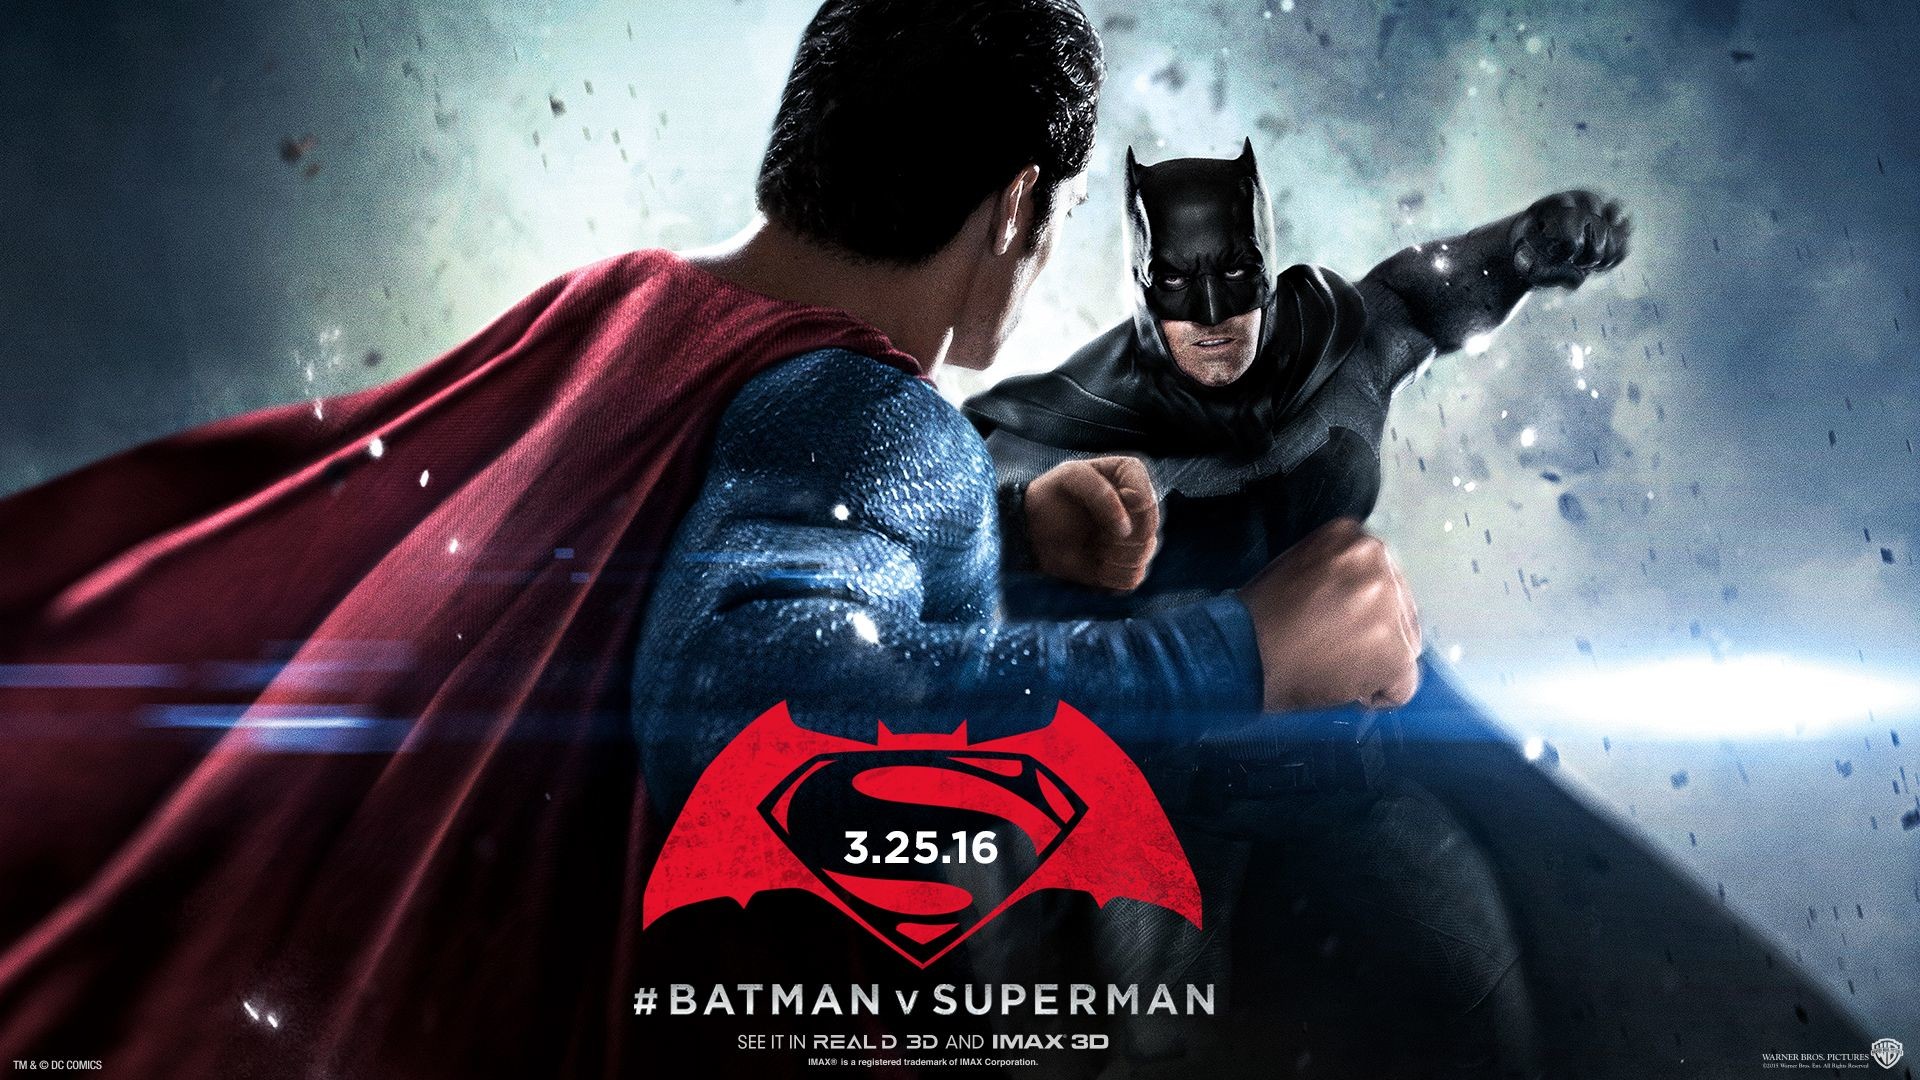 Batman Vs Superman Live Wallpaper - Superman Justice League Hd - 1920x1080  Wallpaper 